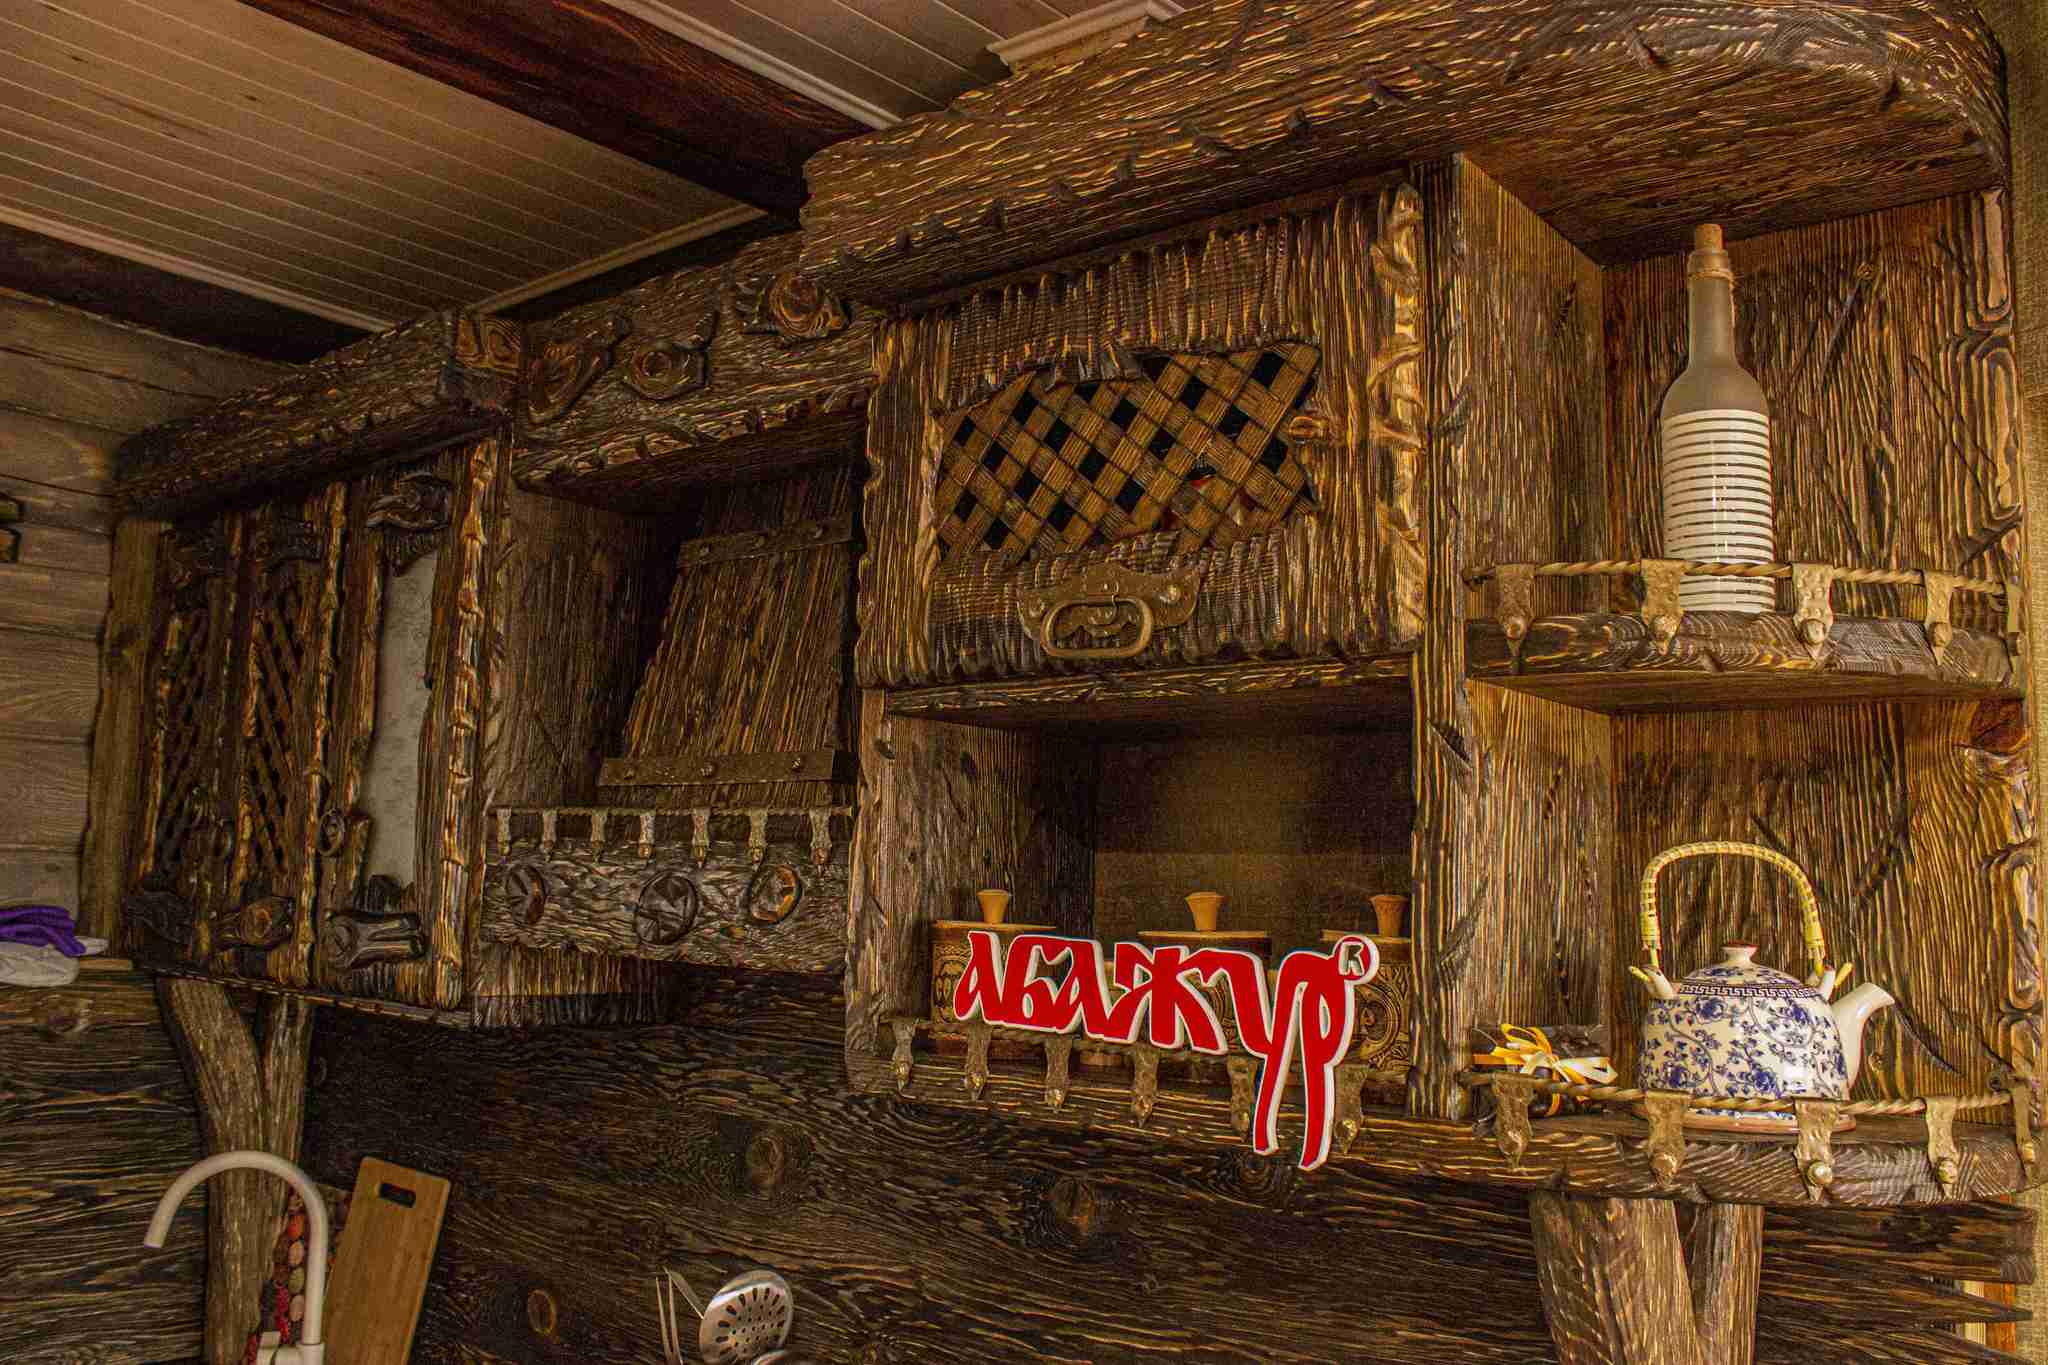 деревянная кухонная мебель под старину